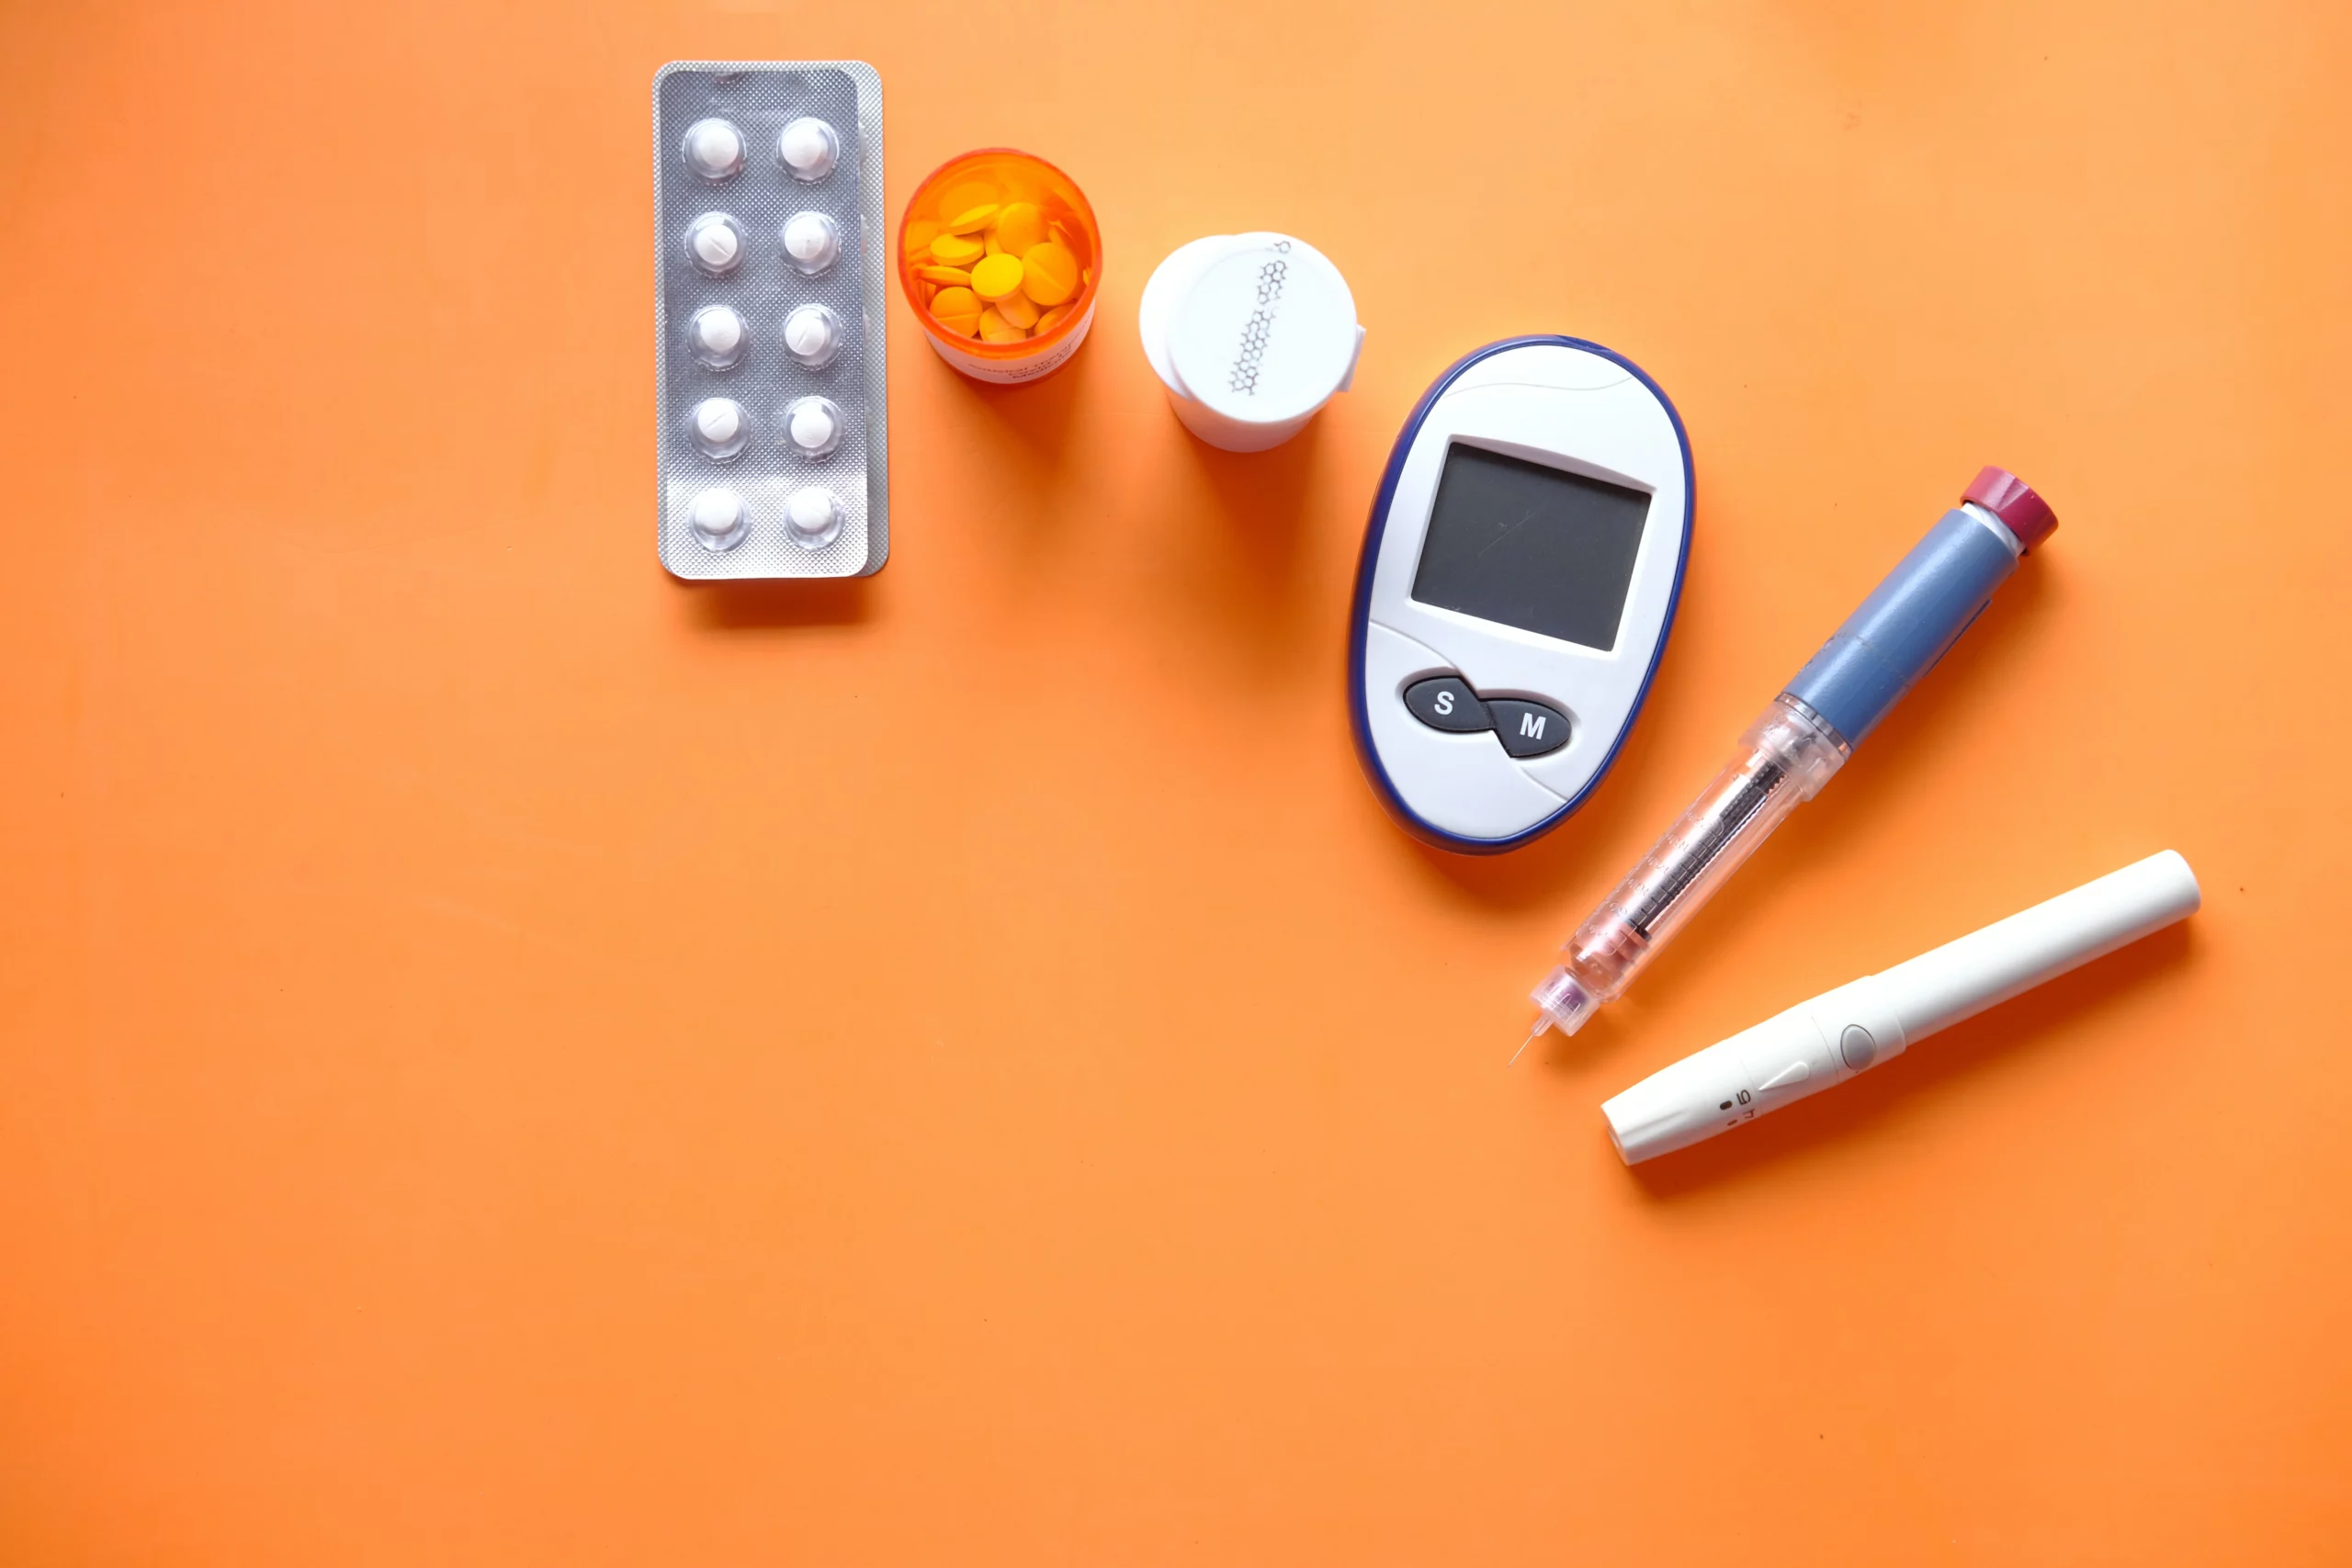 Understanding medicine – Type 2 diabetes